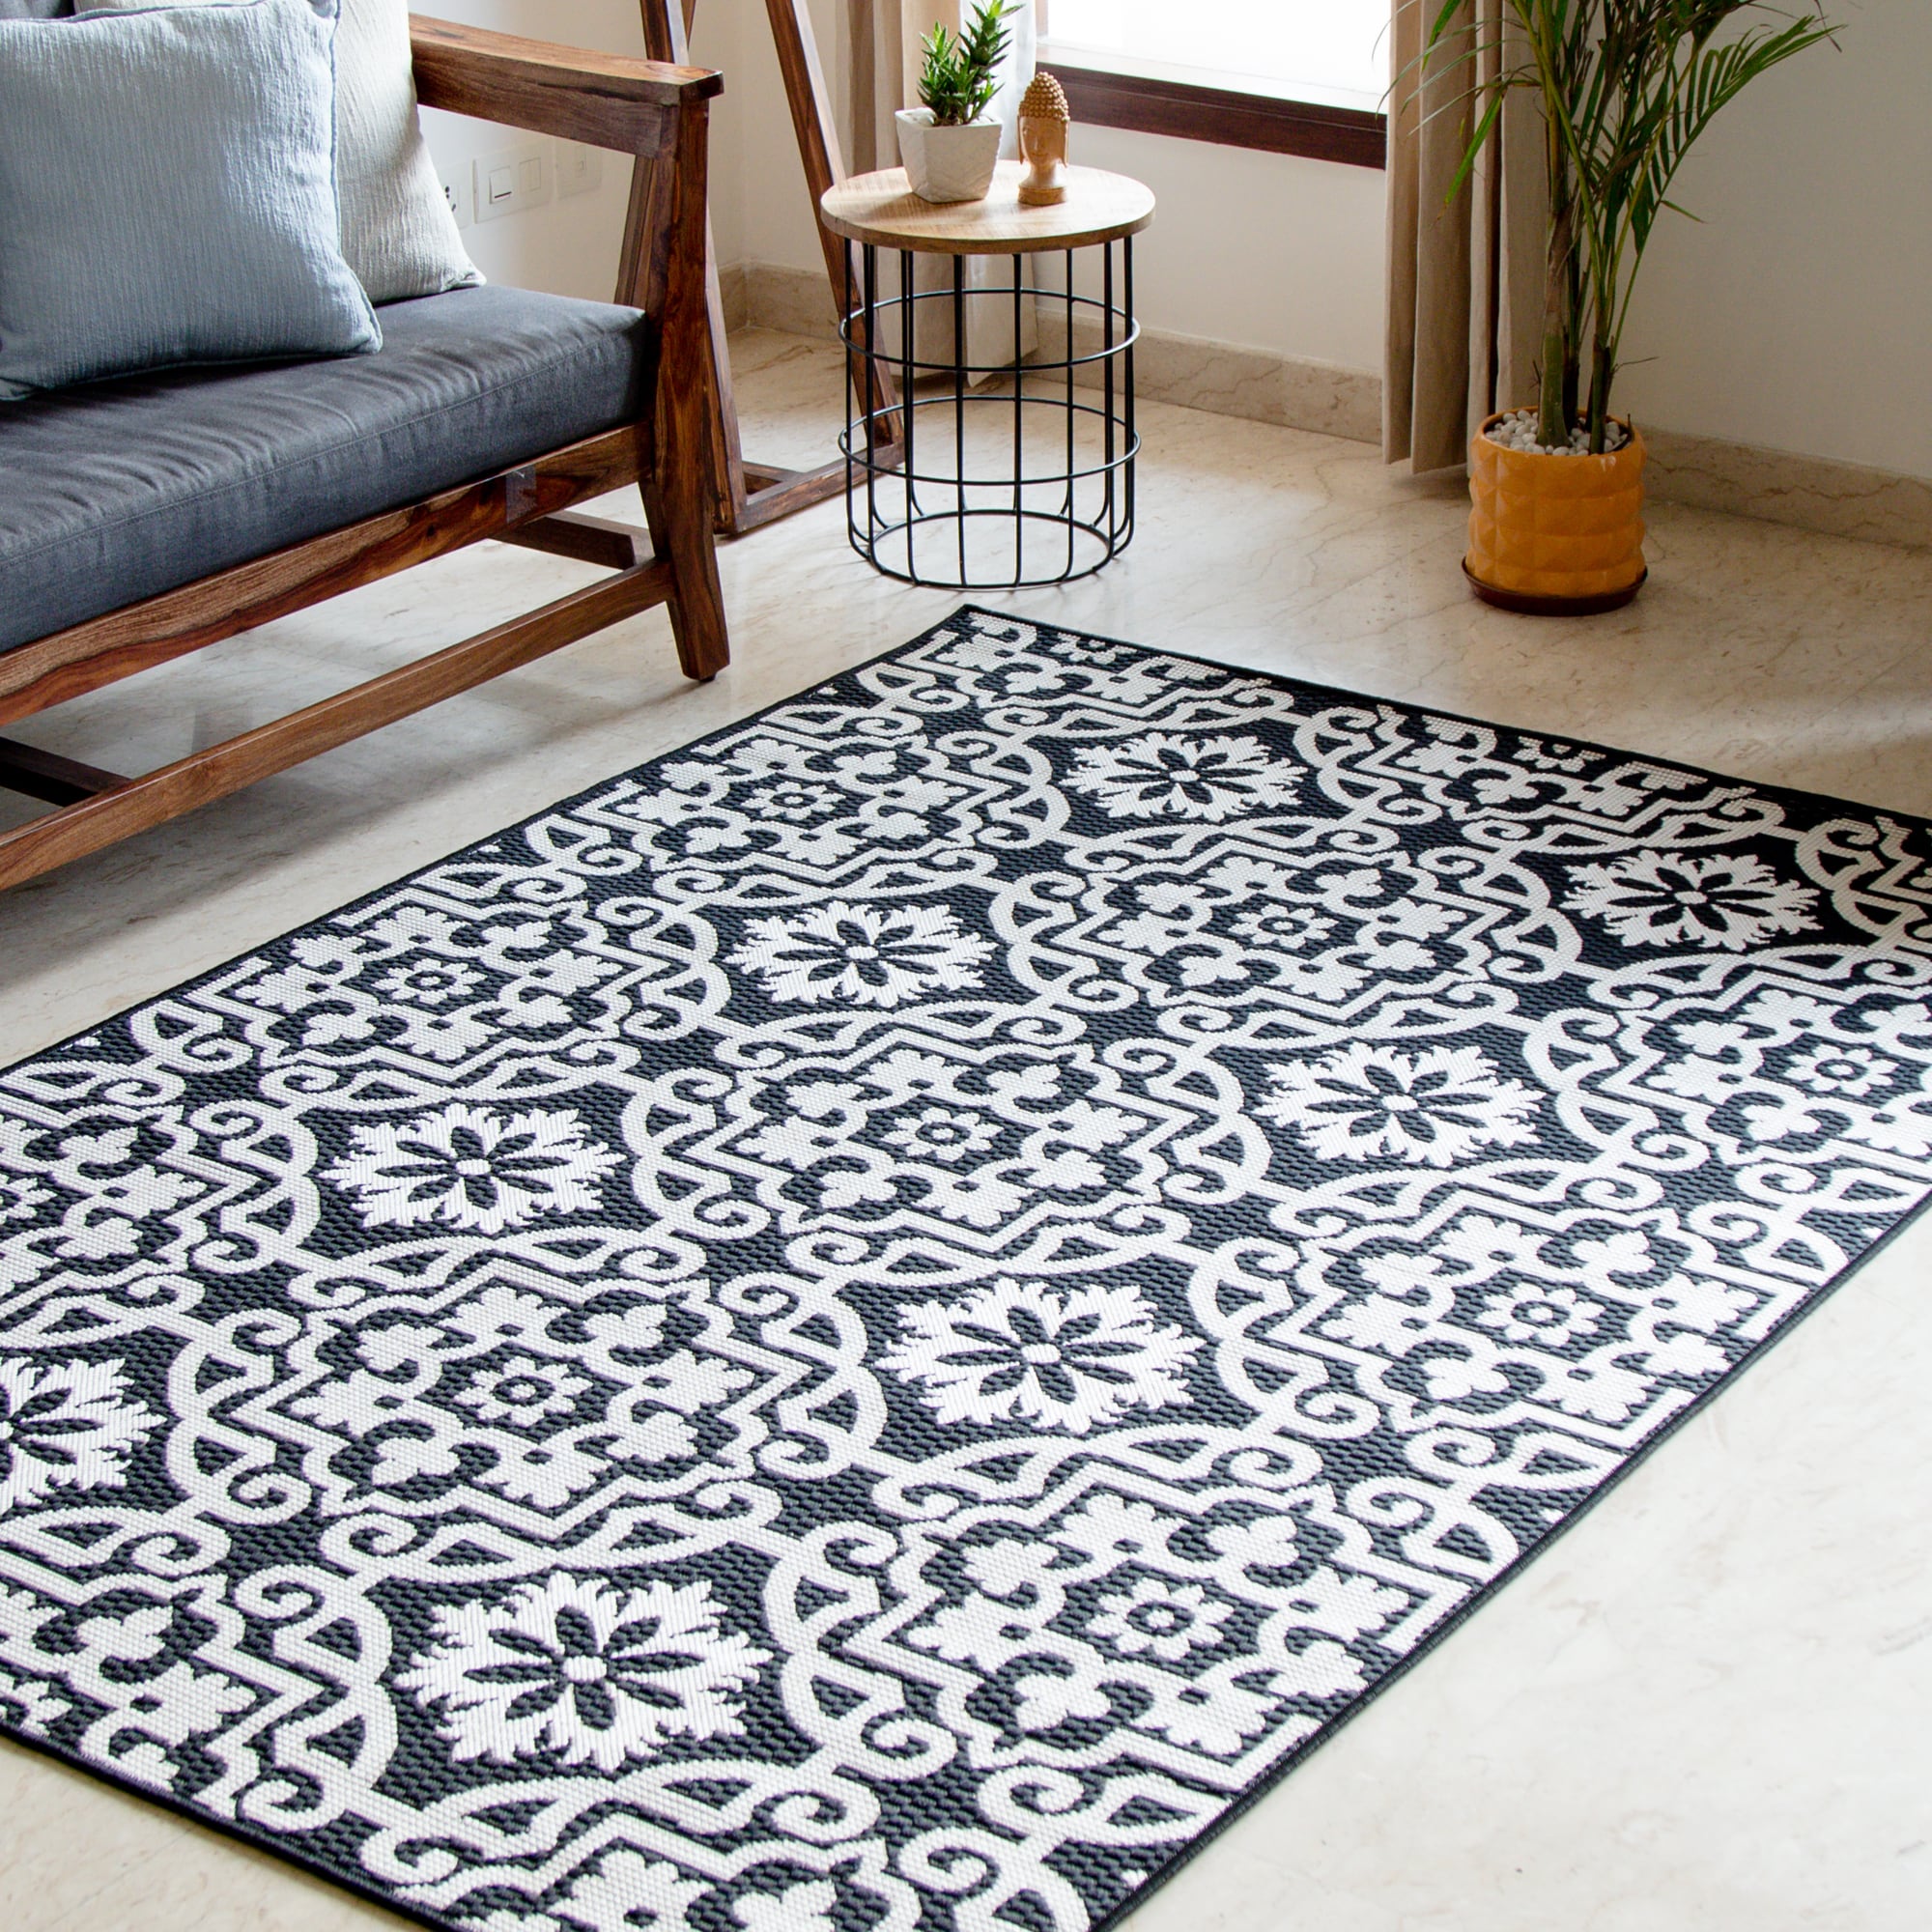 Indian rugs Bedroom rugs Outdoor rugs Hand block printed rugs 5x8 vintage rug Cotton rugs Living room rugs